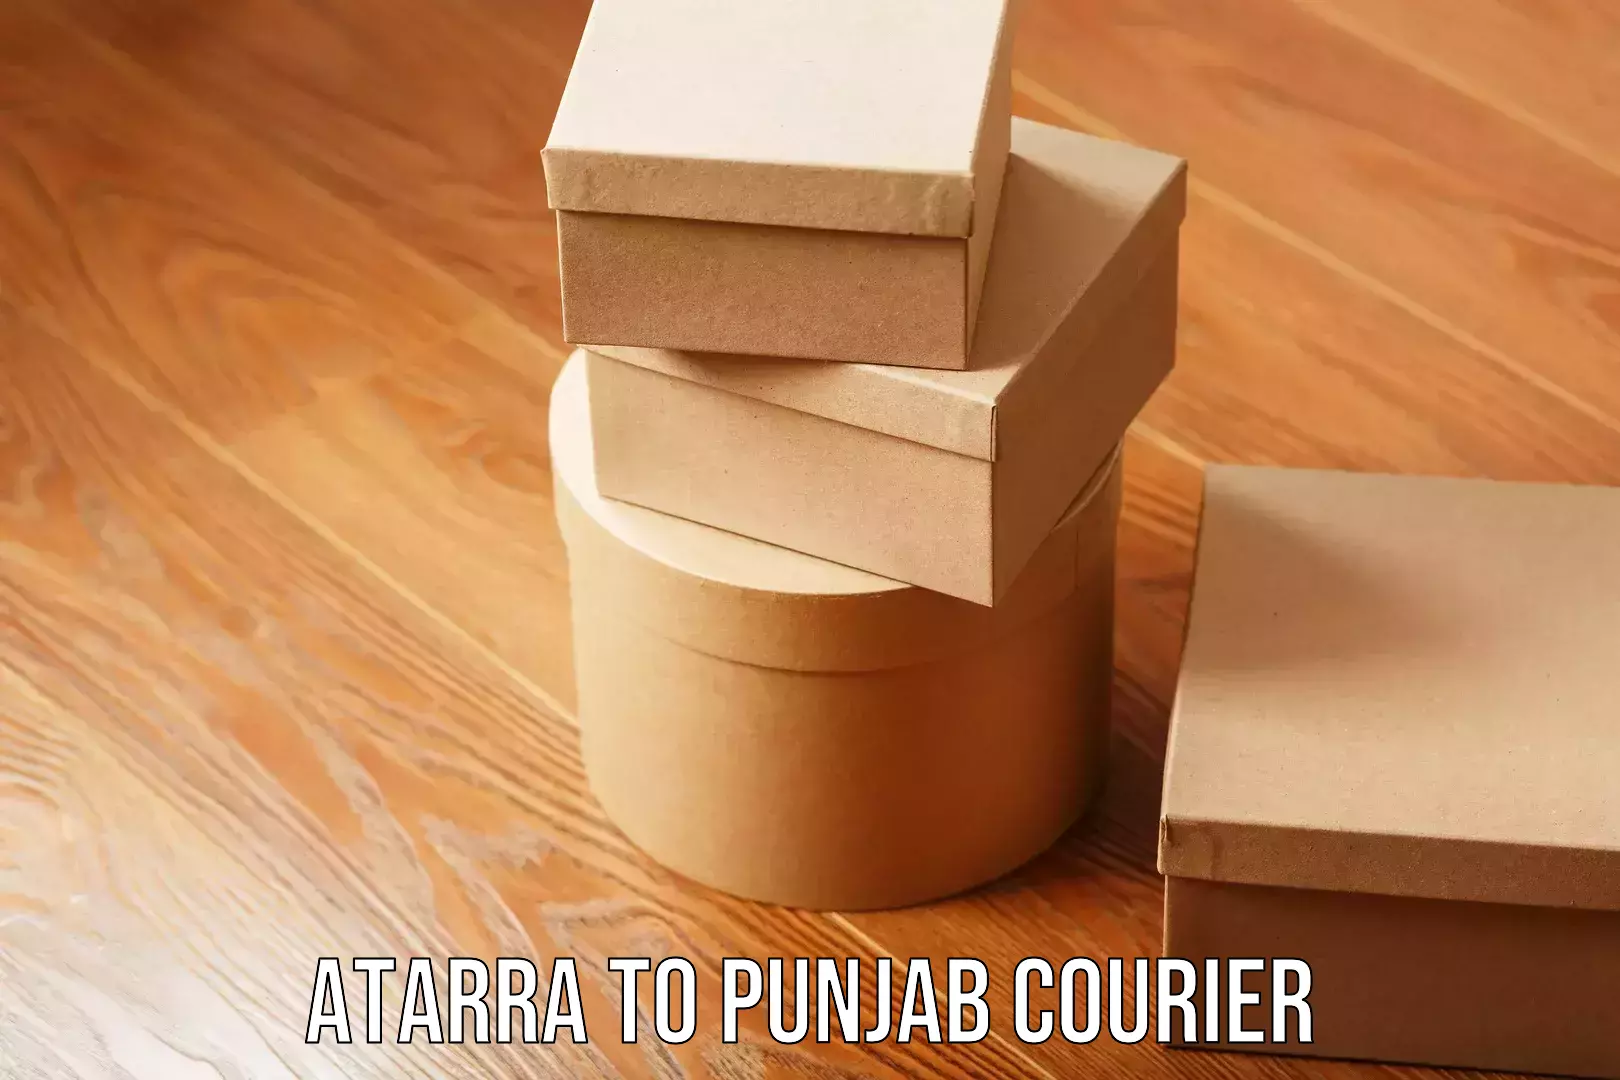 Bulk shipping discounts Atarra to Punjab